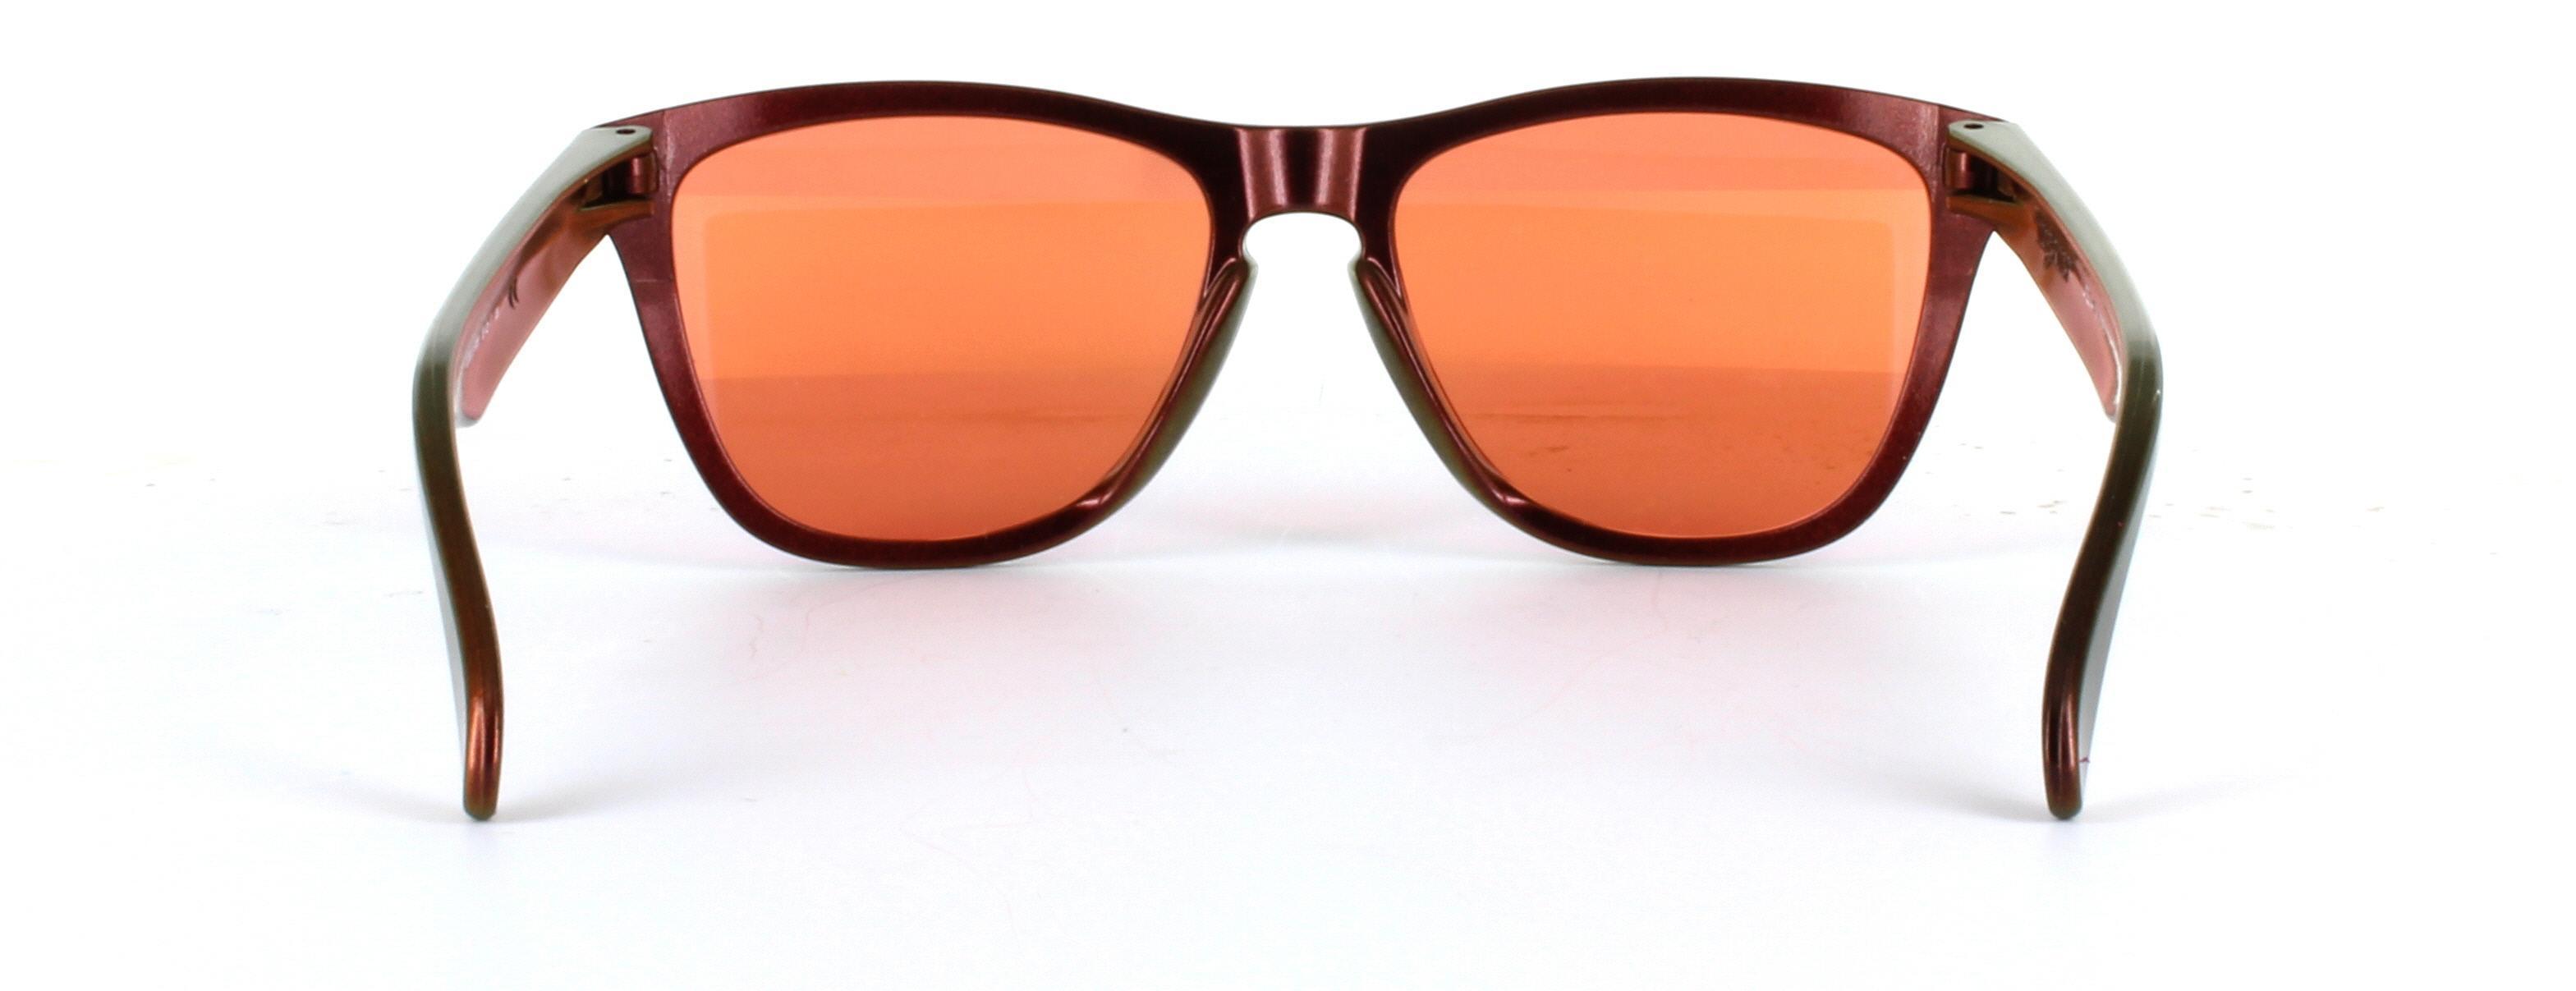 Oakley (O9013) Copper Full Rim Plastic Sunglasses - Image View 3